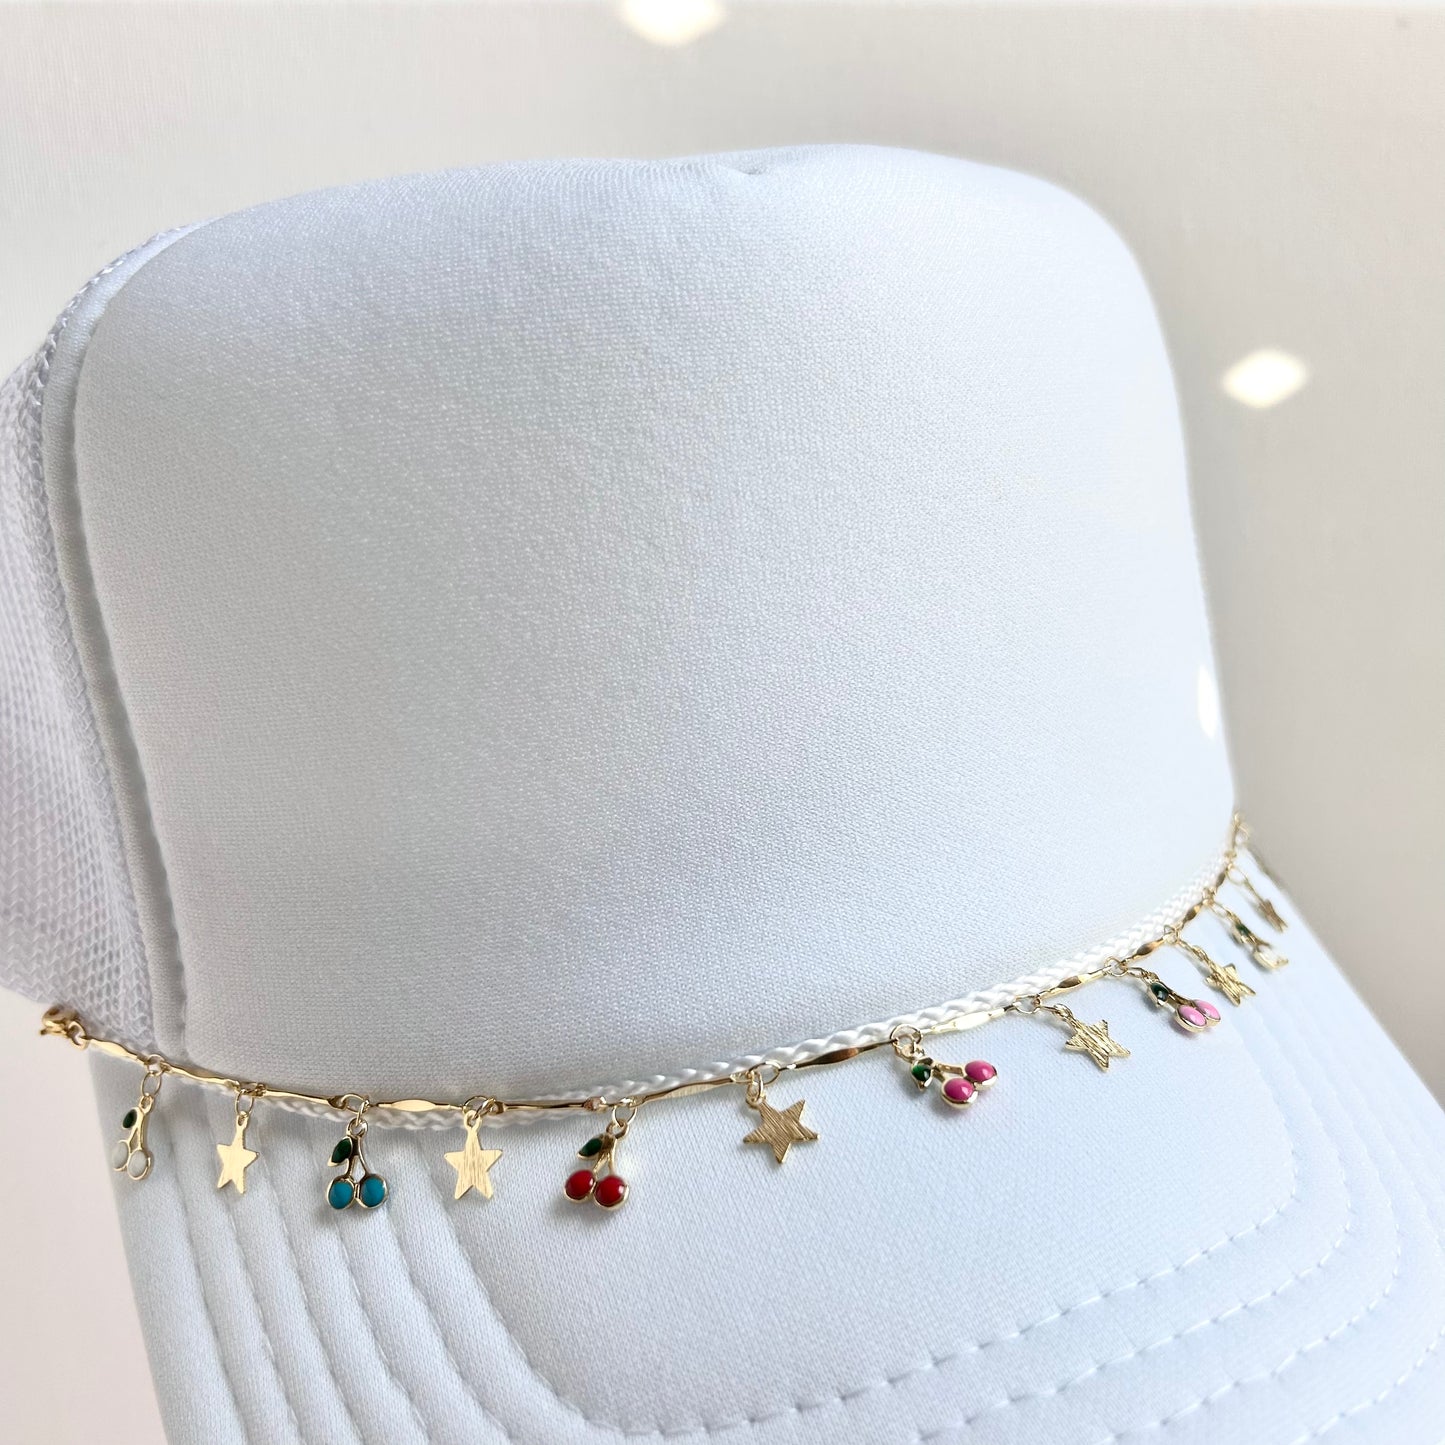 Cherries & Stars Trucker Hat Chain